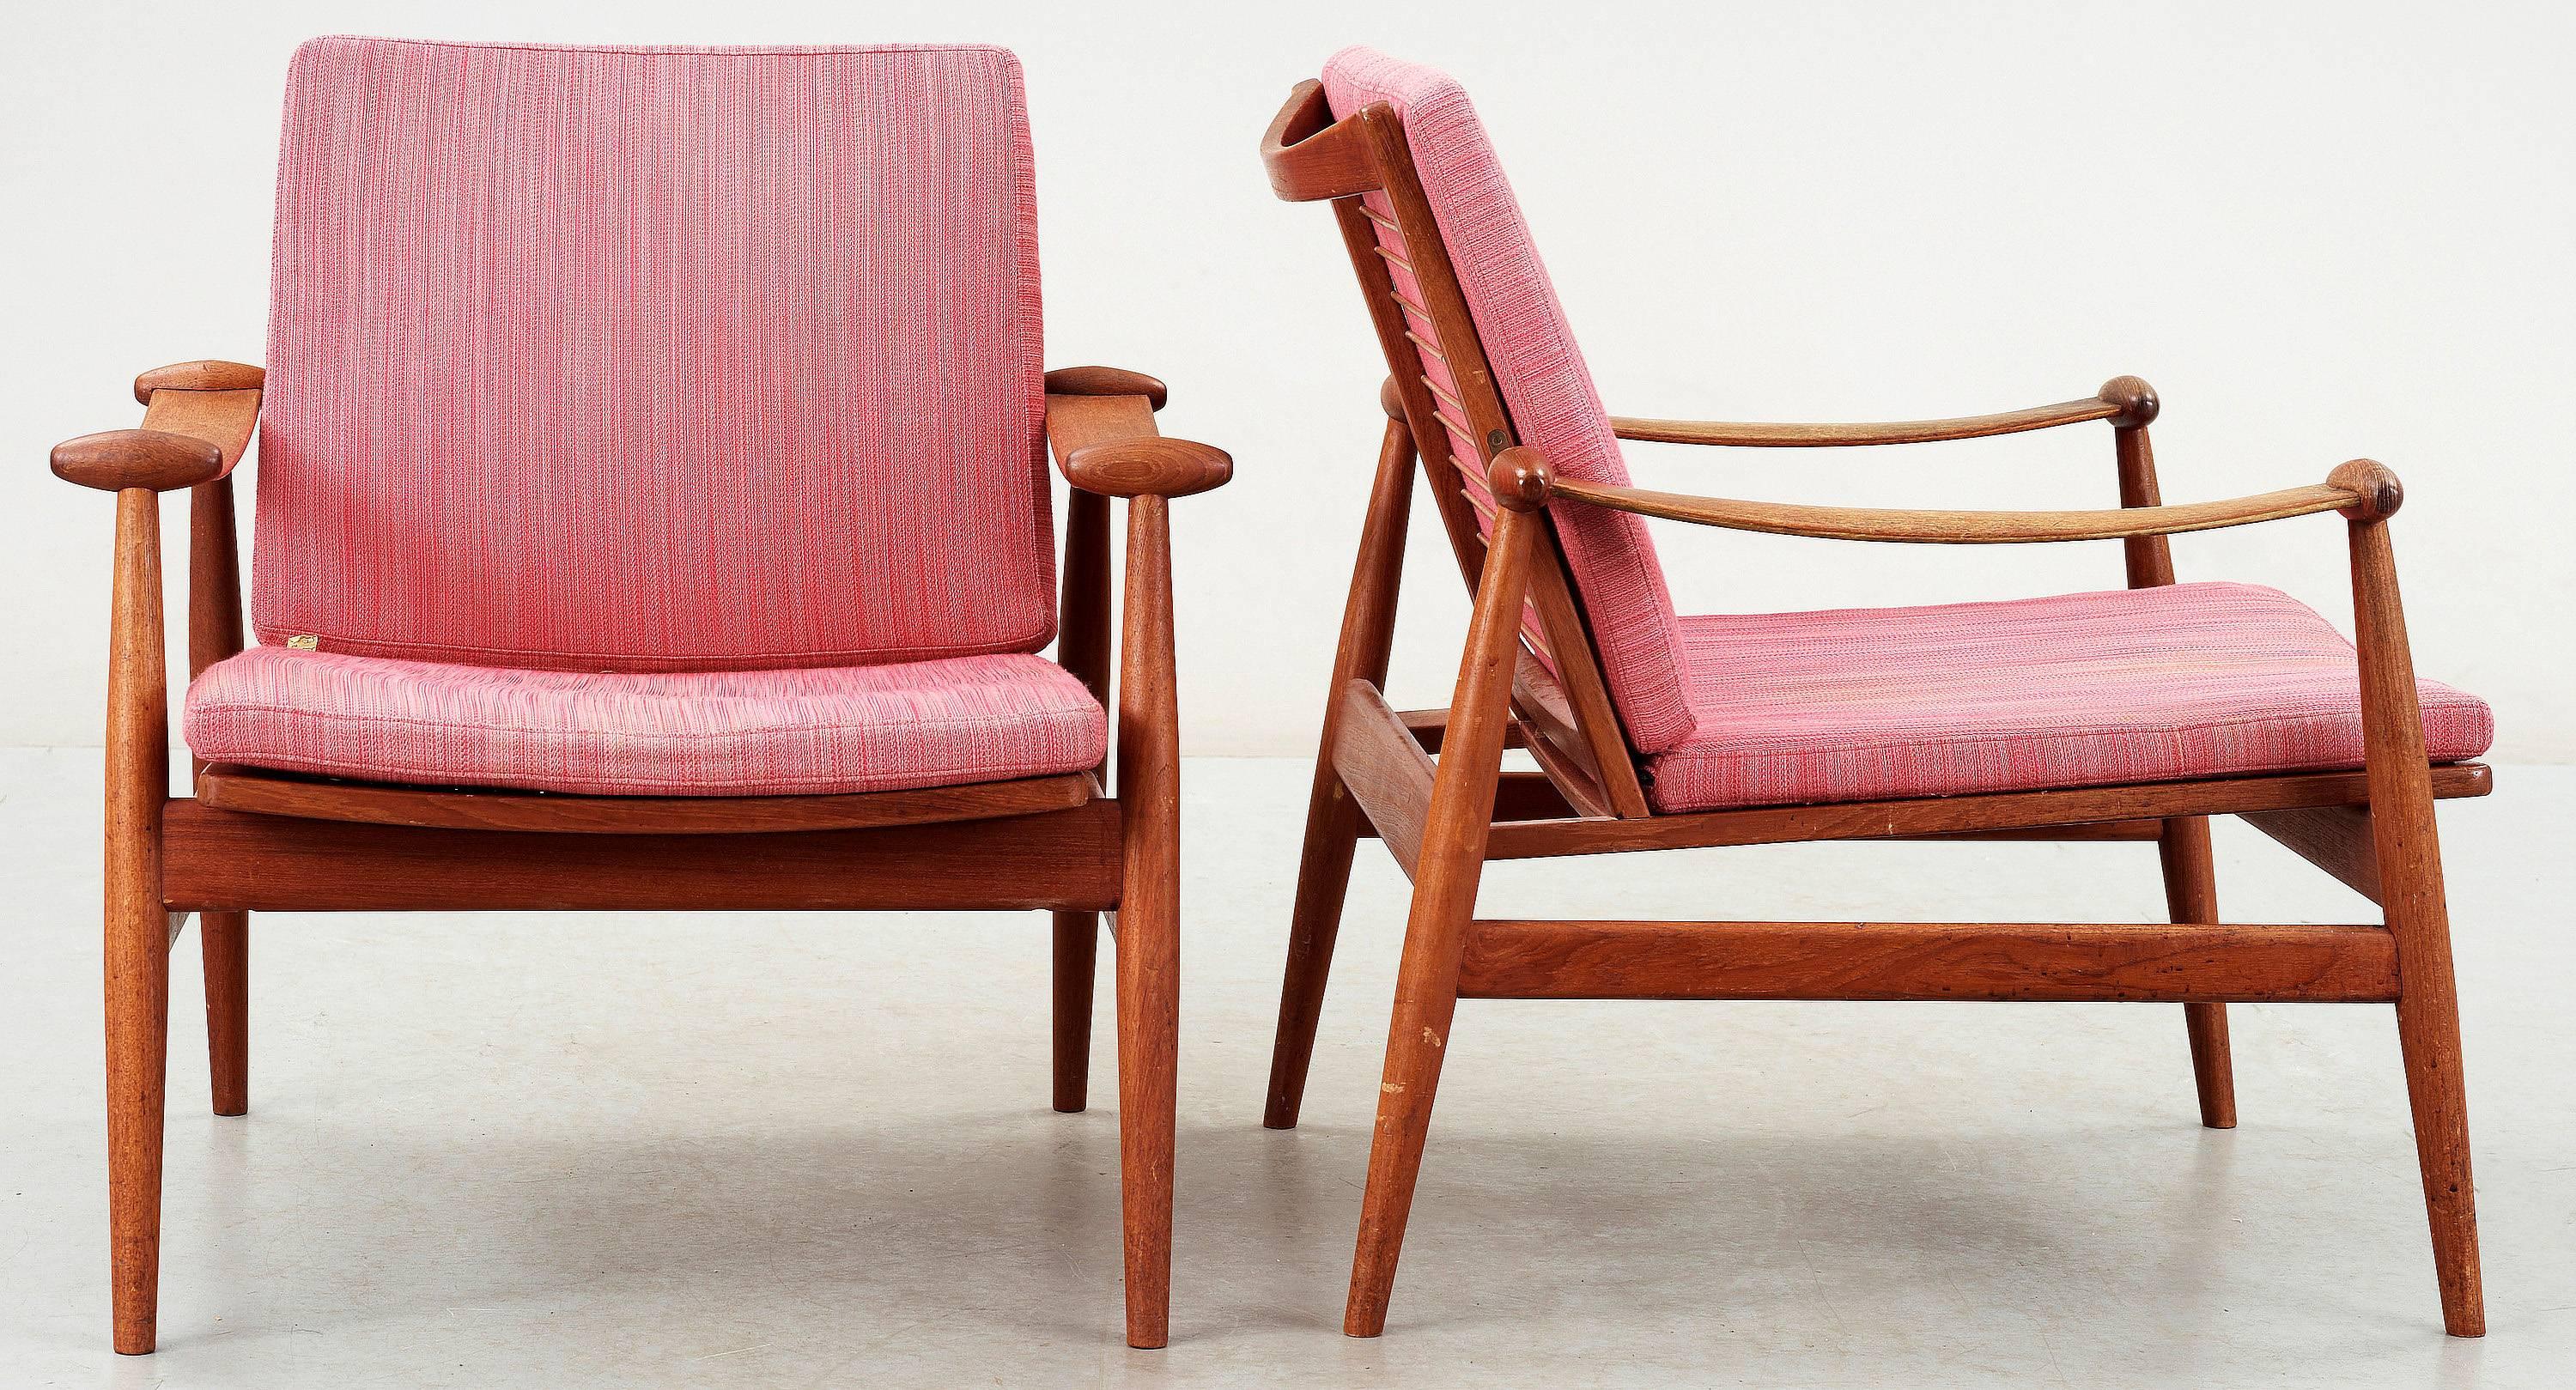 Pair of 'The Spade Chair', model FD133 designed in 1954 Finn Juhl for France & Son, Denmark. Vintage red upholstery.